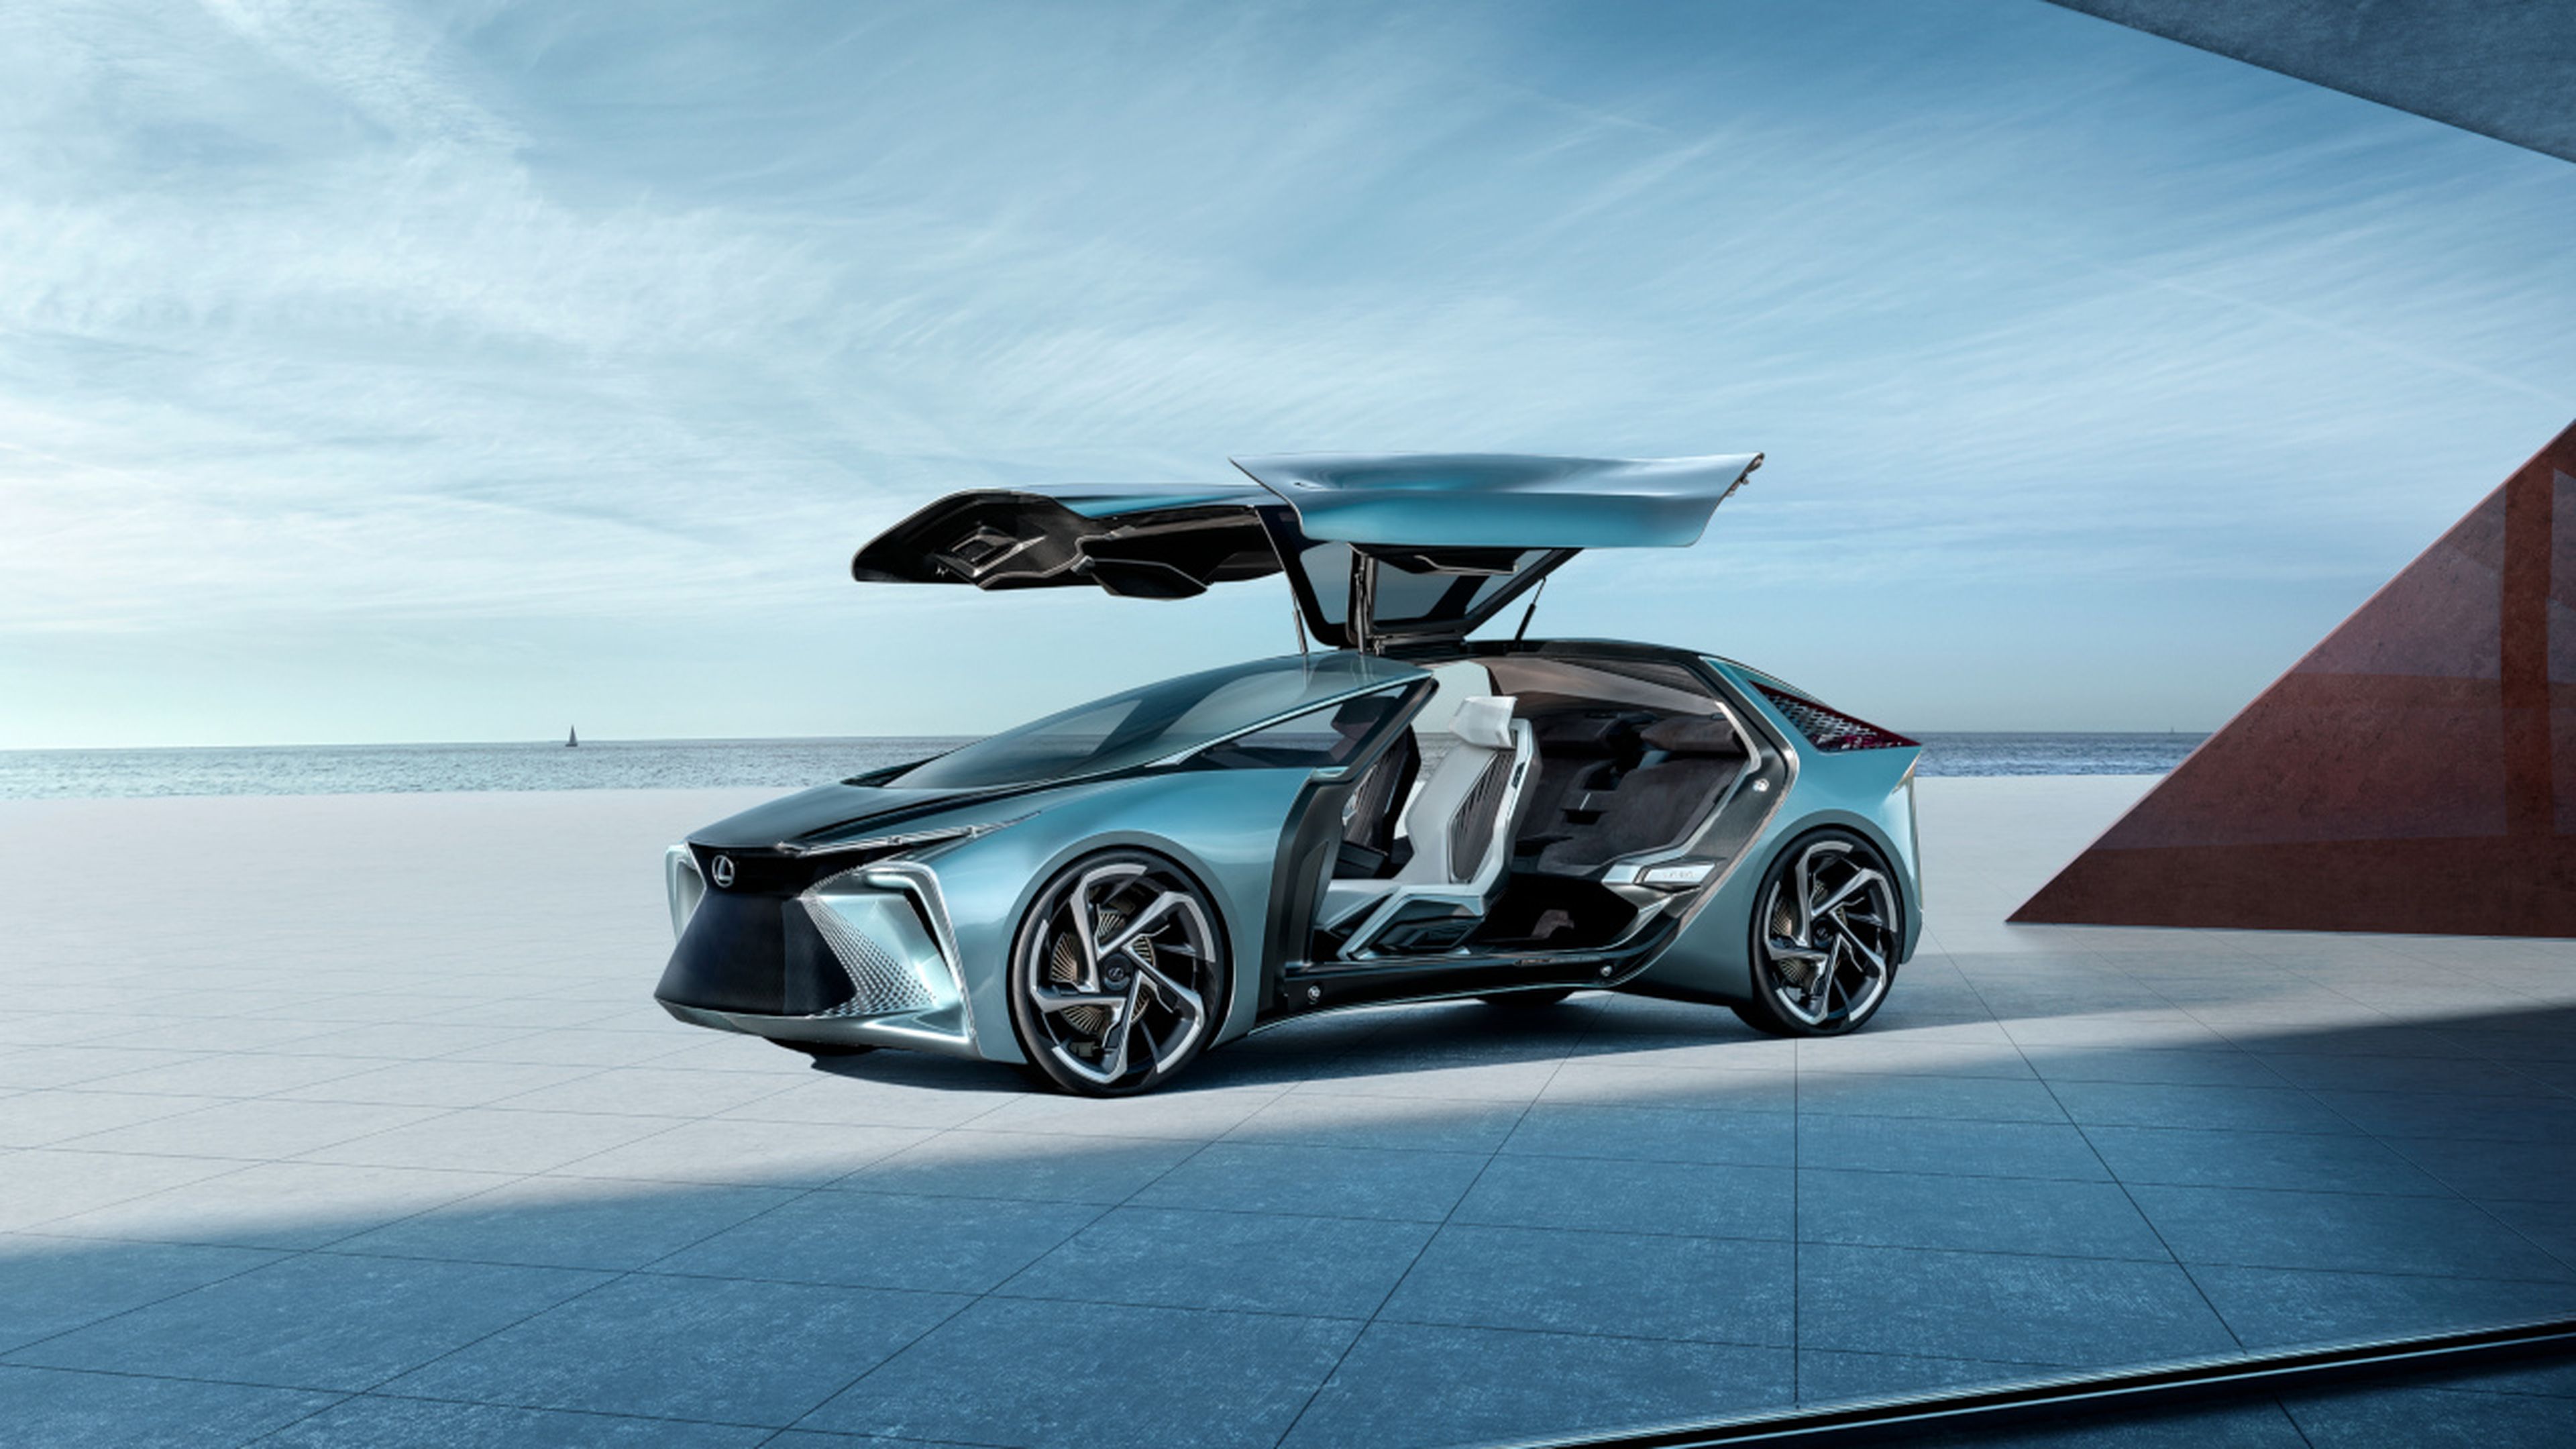 Puertas alas de gaviota del Lexus LF30, el concept que encarna la visión eléctrica de Lexus.